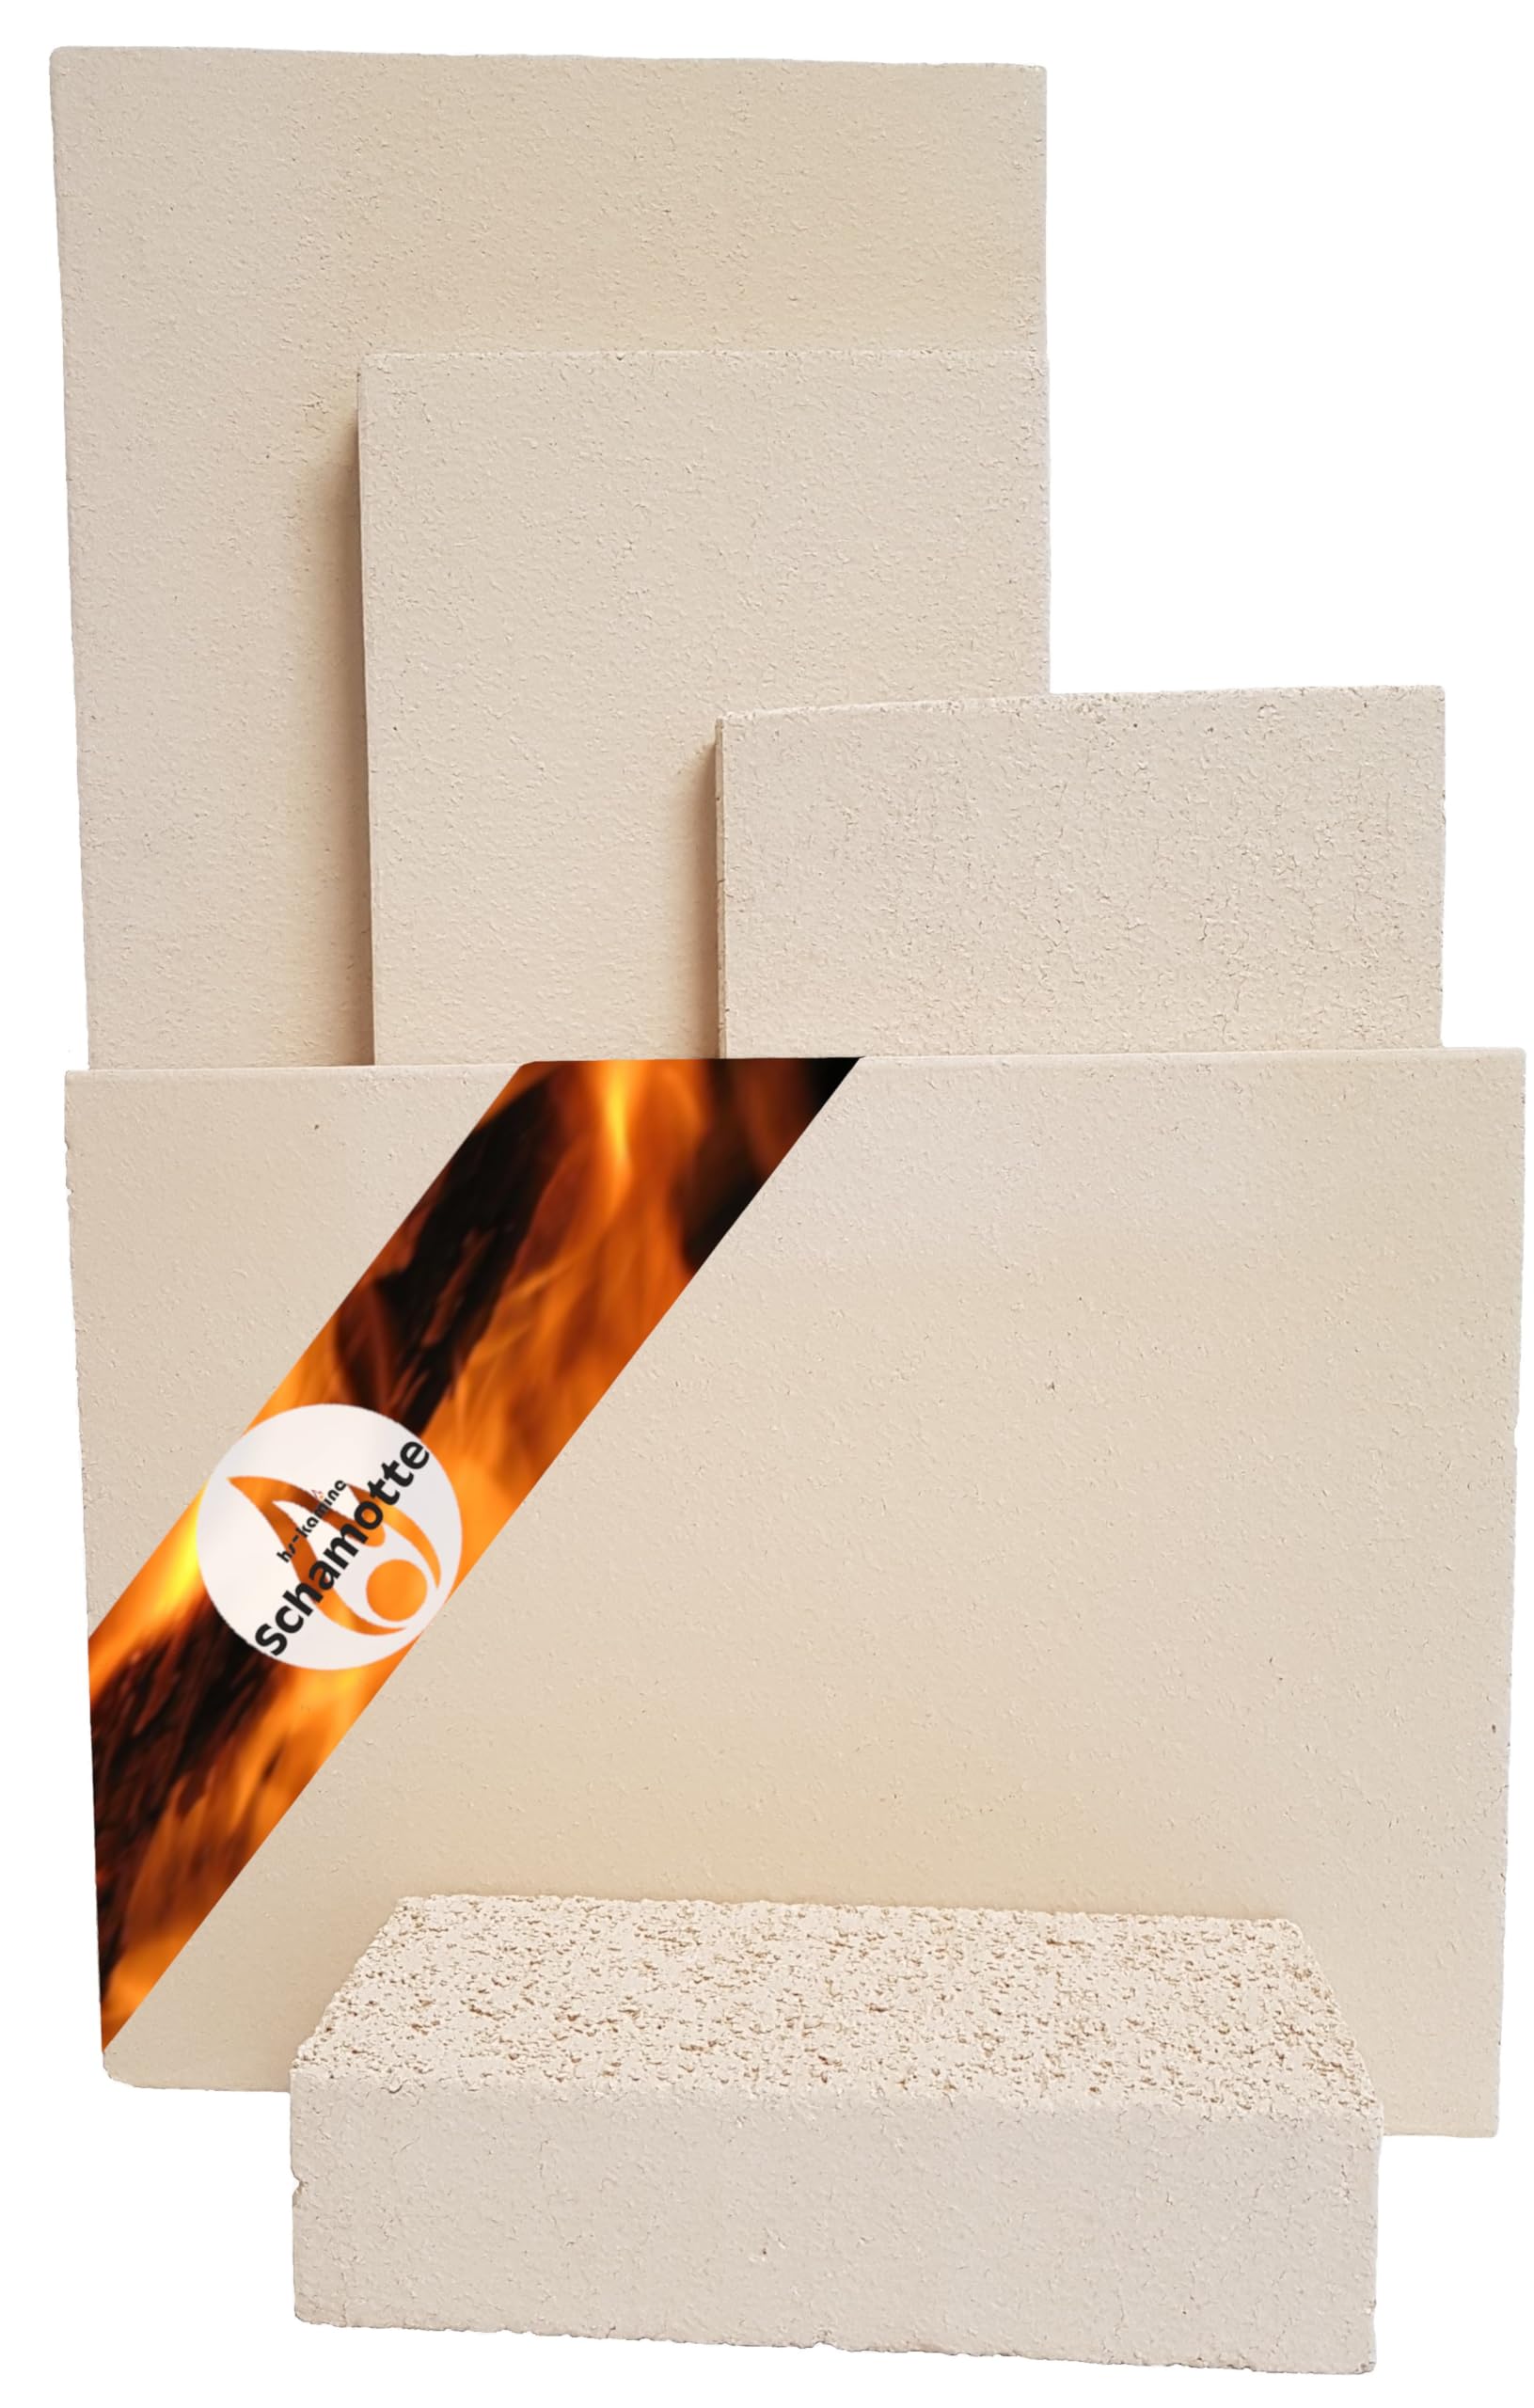 Schamotteplatten Premium Wh für den Feuerraum und auch für Holzbacköfen, Pizzaöfen und Grills feuerfest & lebensmittelecht viele Größen online verfügbar (400 x 400 x 30 mm, 1 Stück)